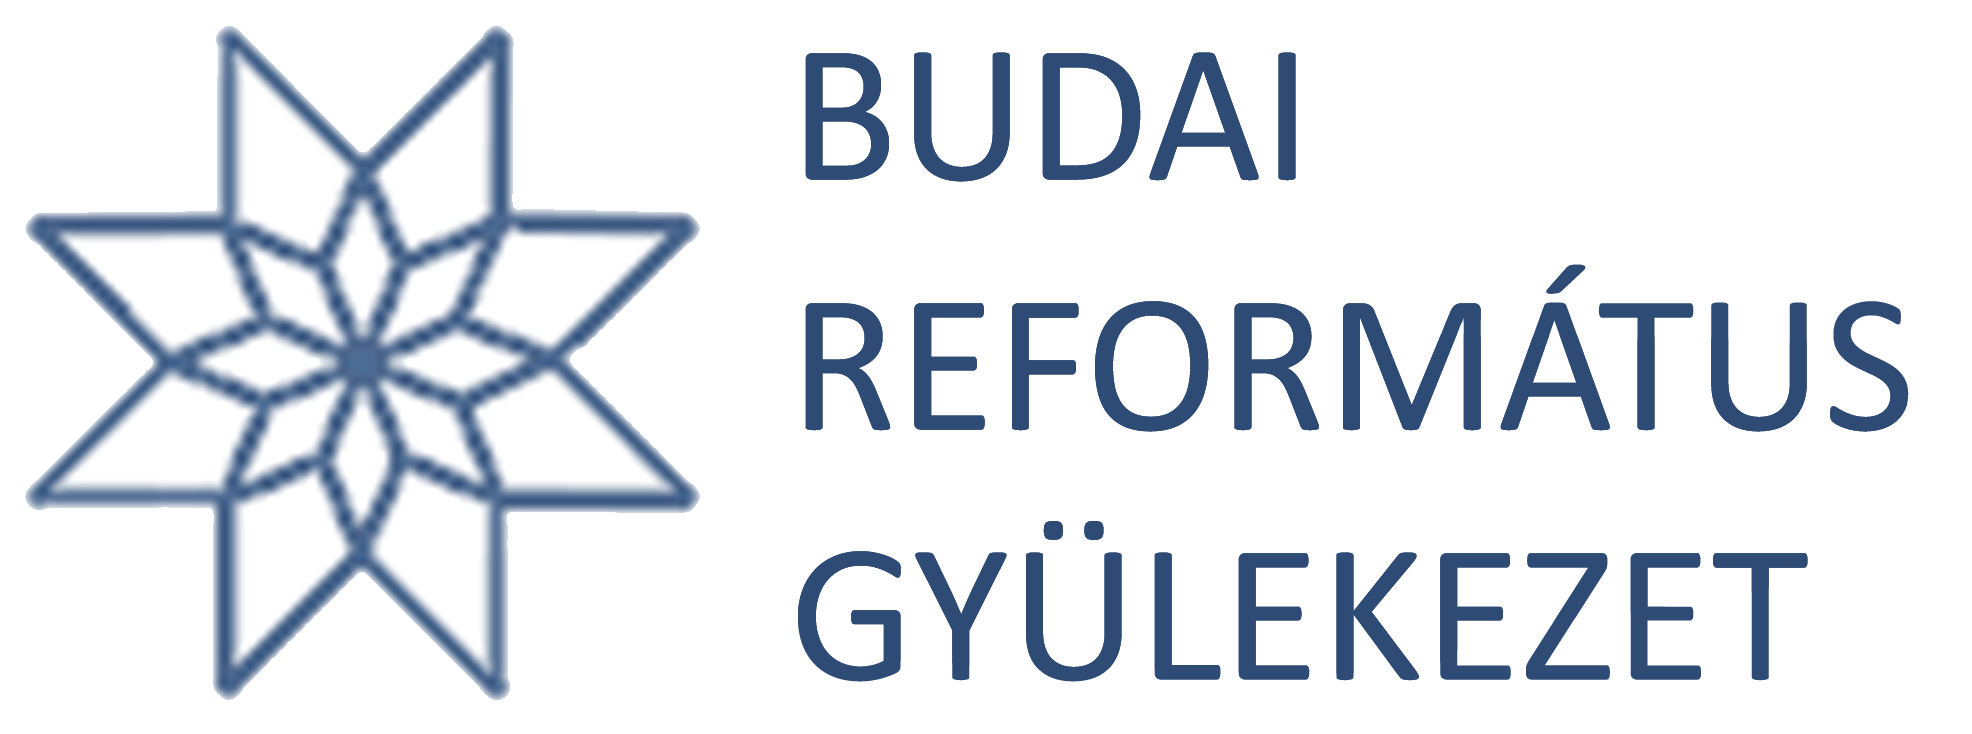 Budai Református Egyházközség